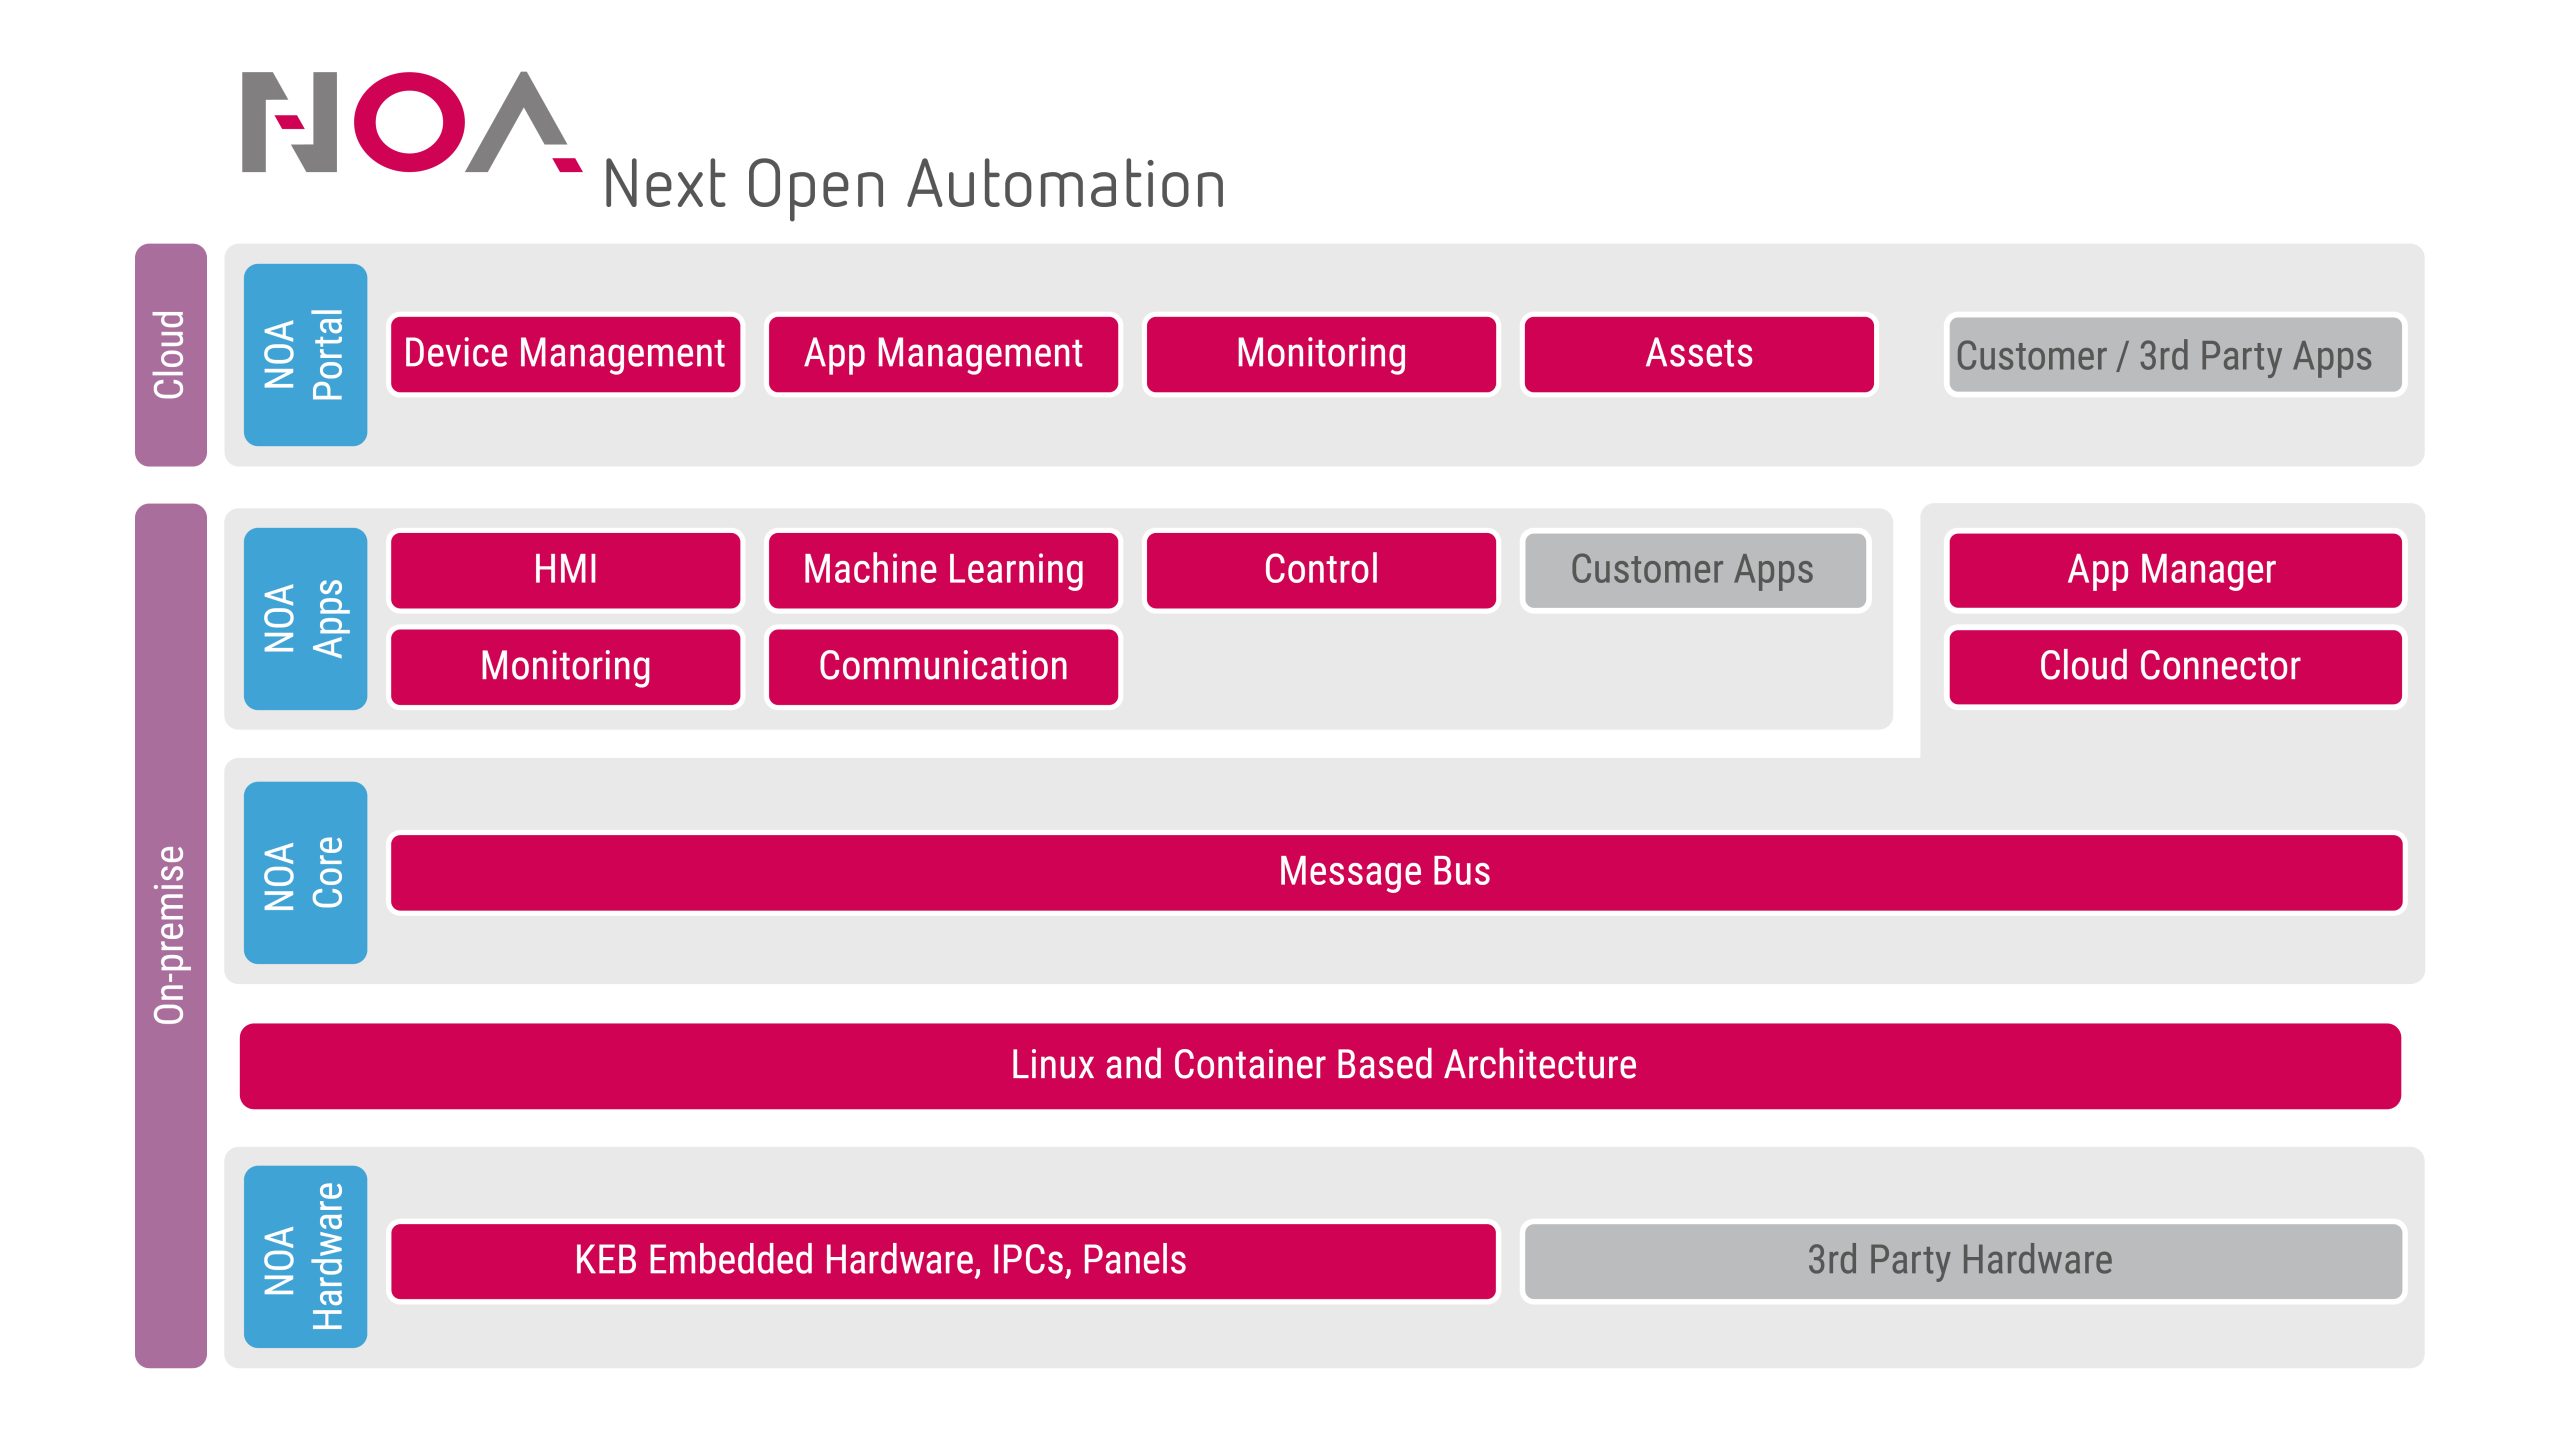 KEB präsentiert offene Automatisierungsplattform